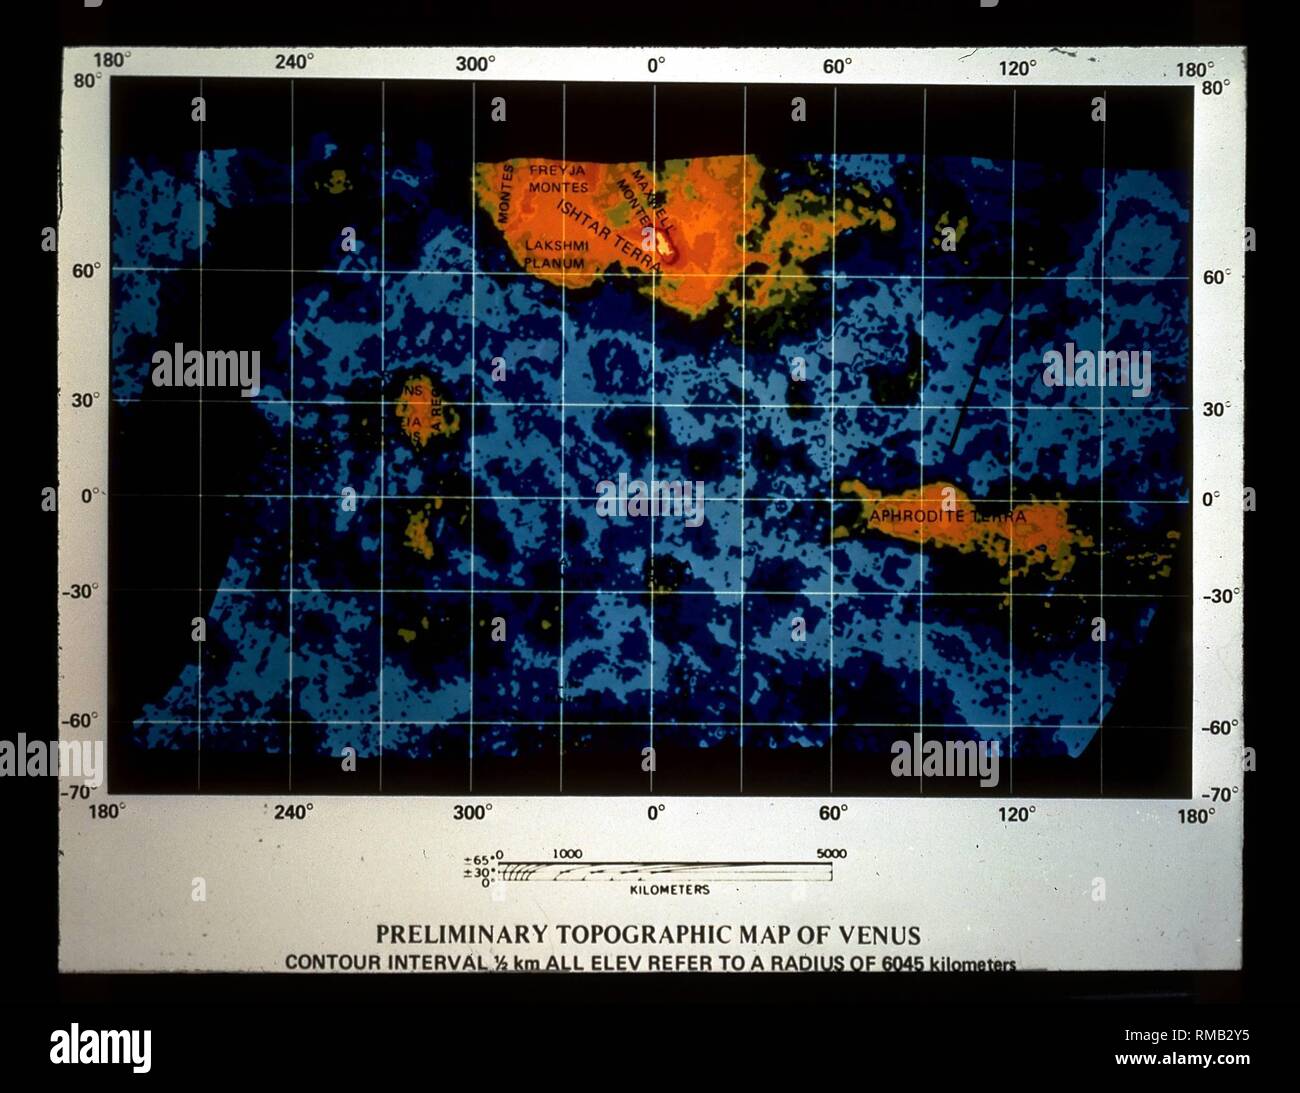 Mappa topografica di Venere. Foto non datata, probabilmente negli anni ottanta. Foto Stock